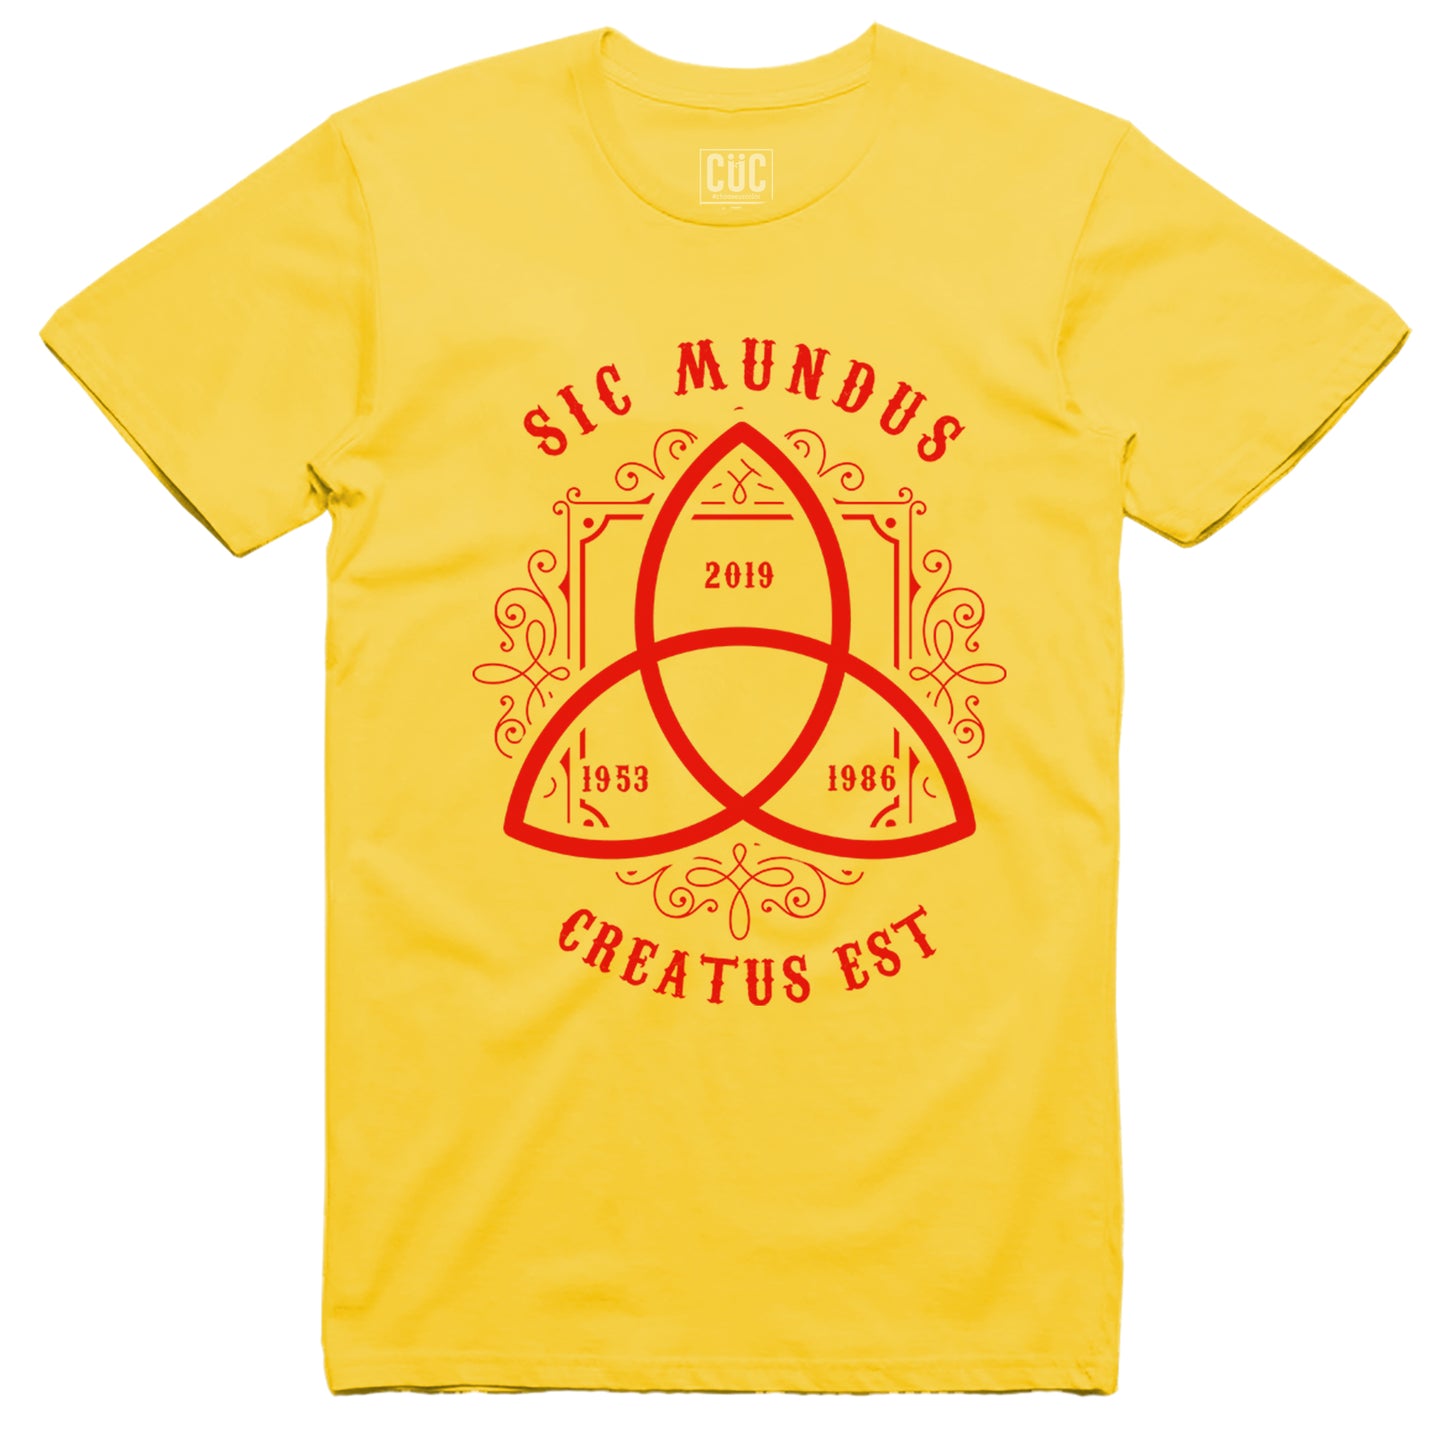 CUC T-Shirt Sic Mundus Creatus Est - #chooseurcolor - CUC chooseurcolor